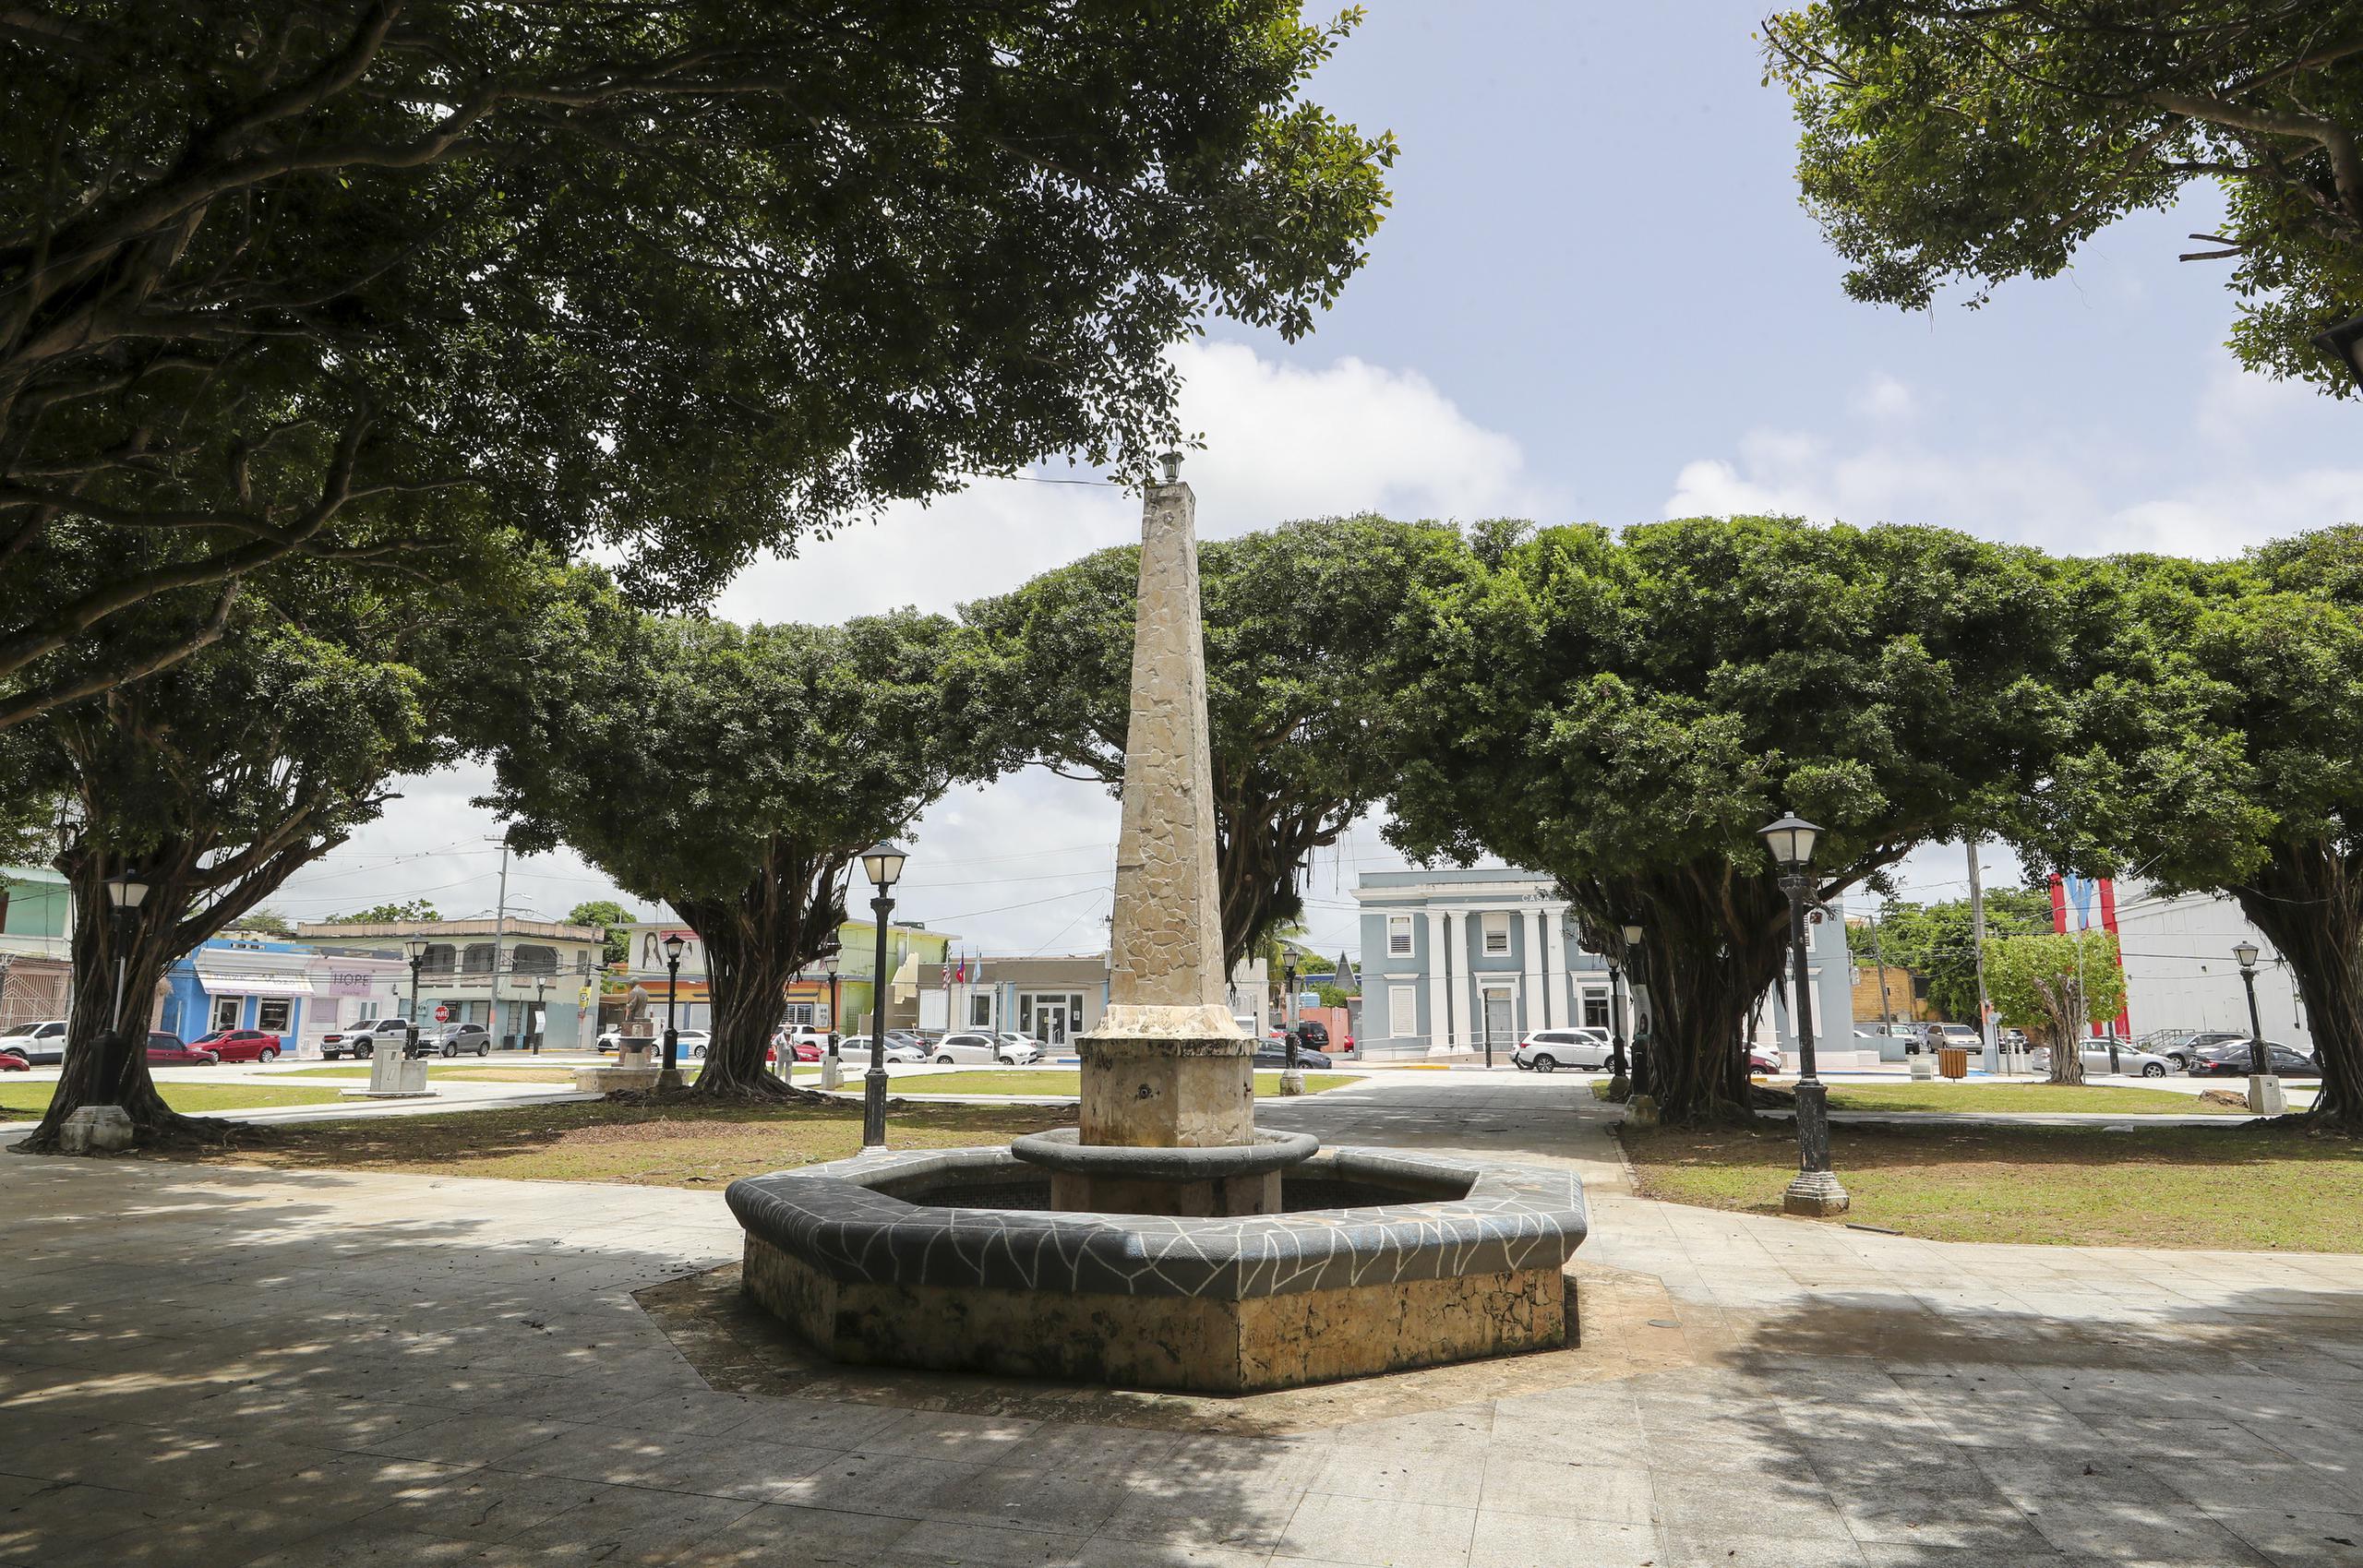 La plaza posee 16 jardines adornados con árboles de ficus que dan sombra a quienes pasean por ella.